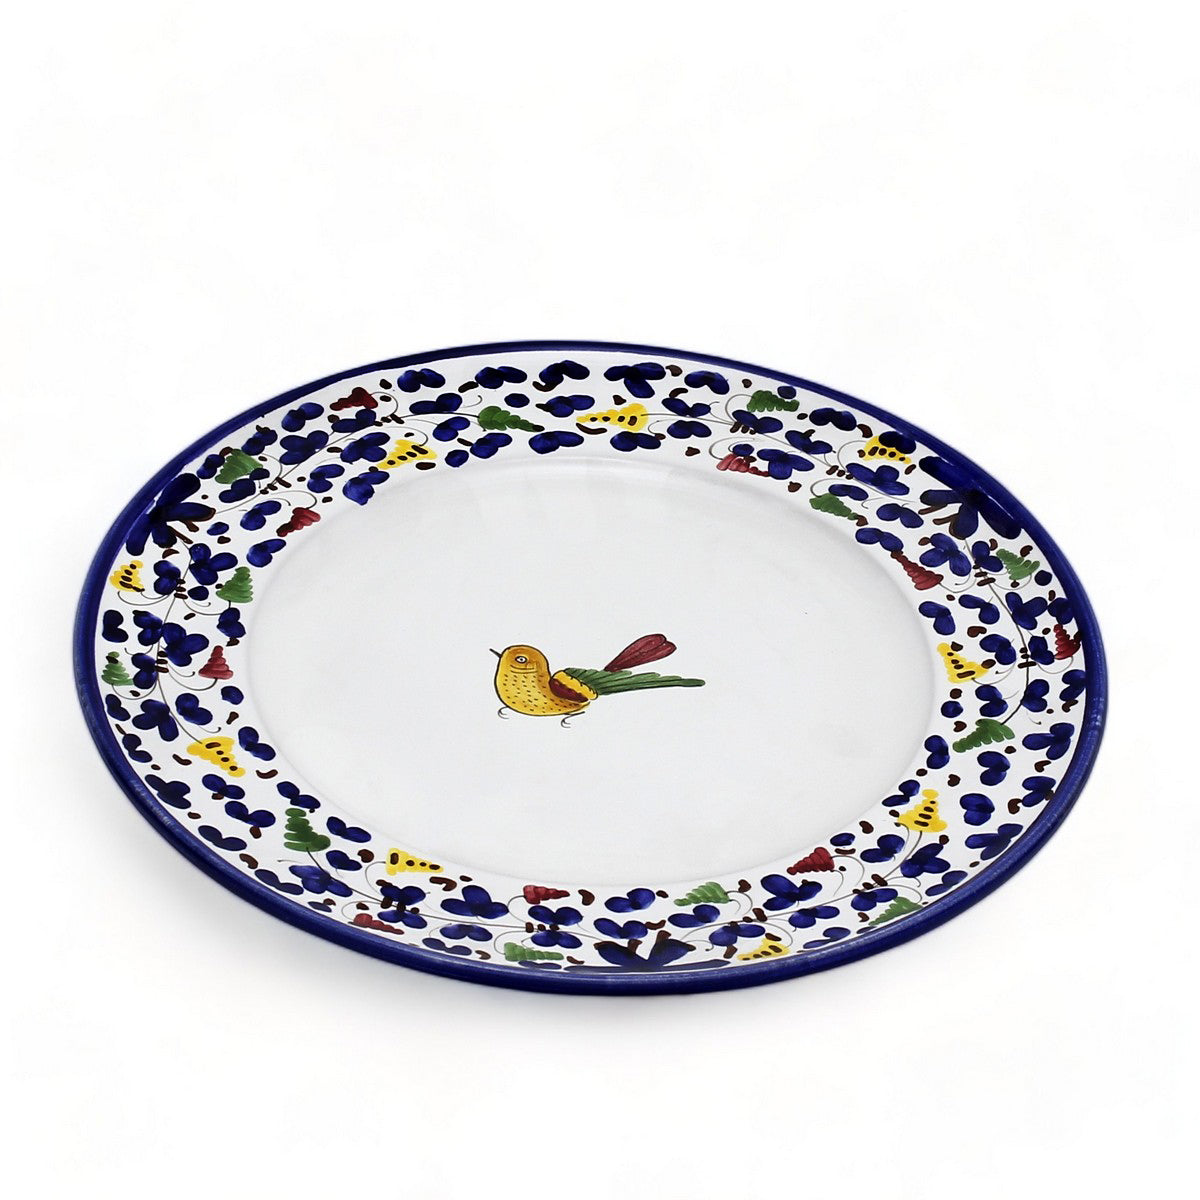 ARABESCO BLUE DERUTA: Dinner Plate